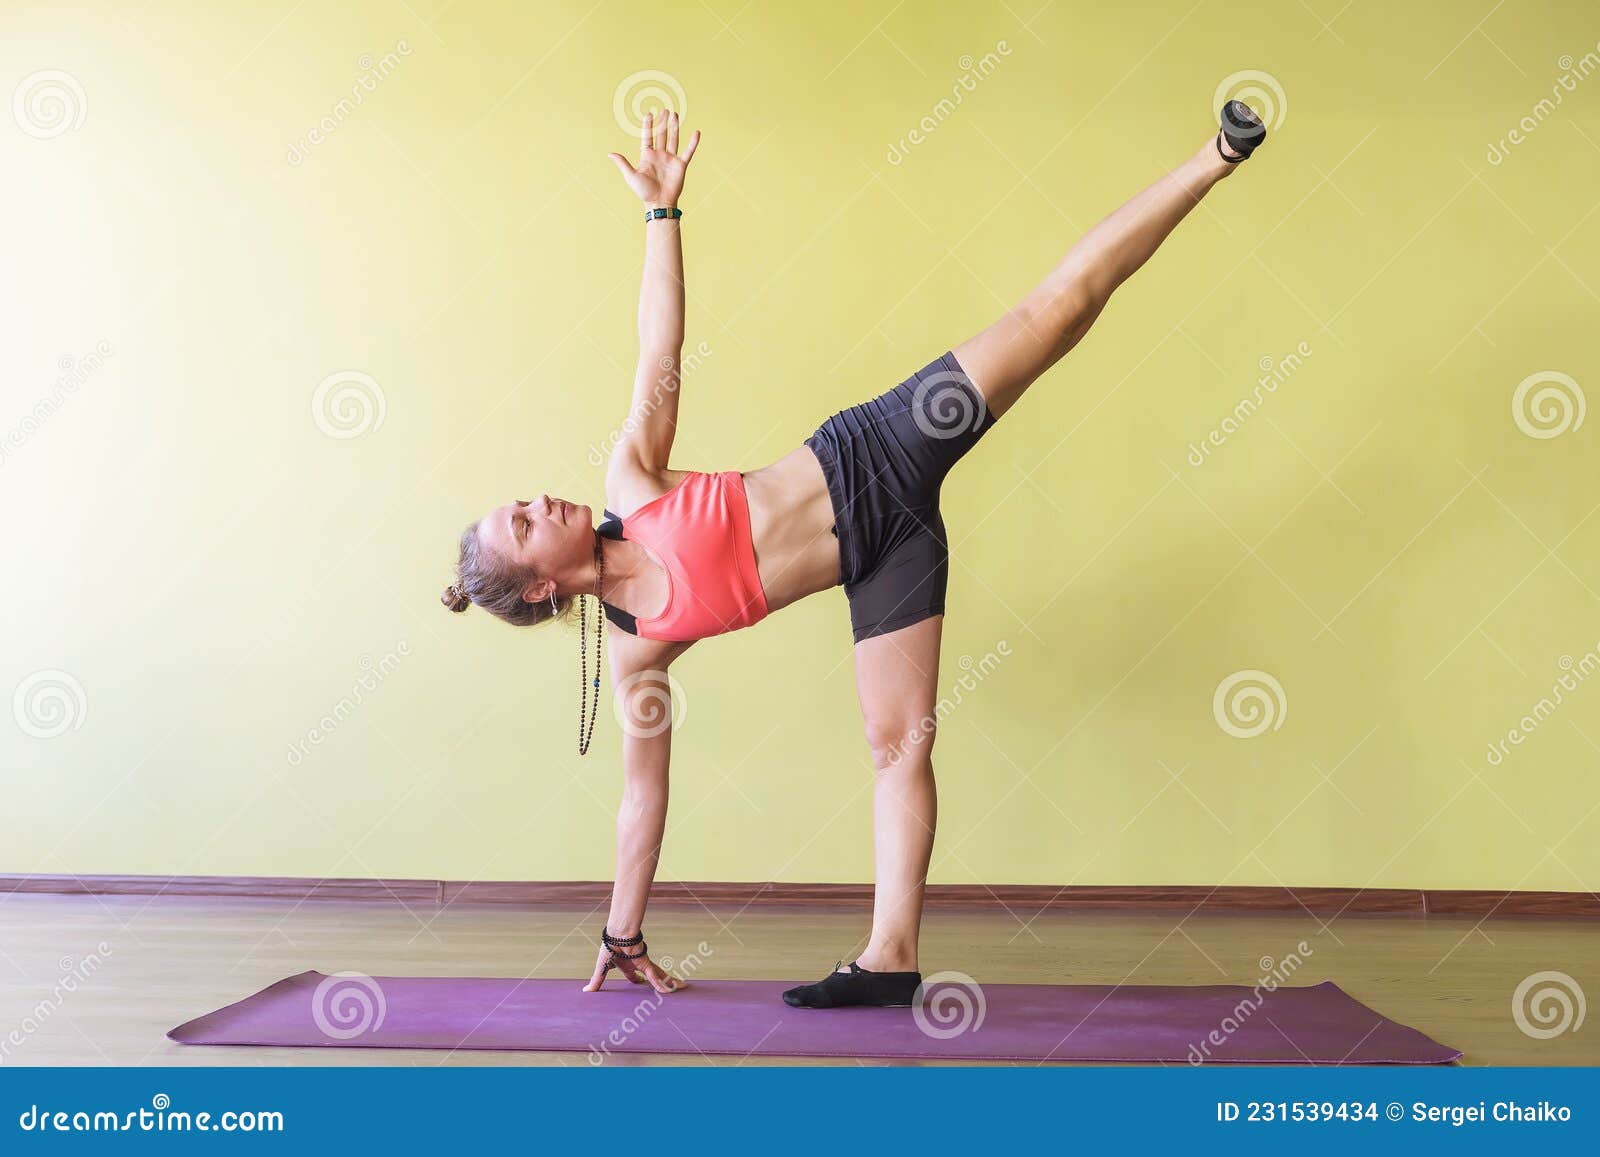 Yoga Pose: Banana | Pocket Yoga